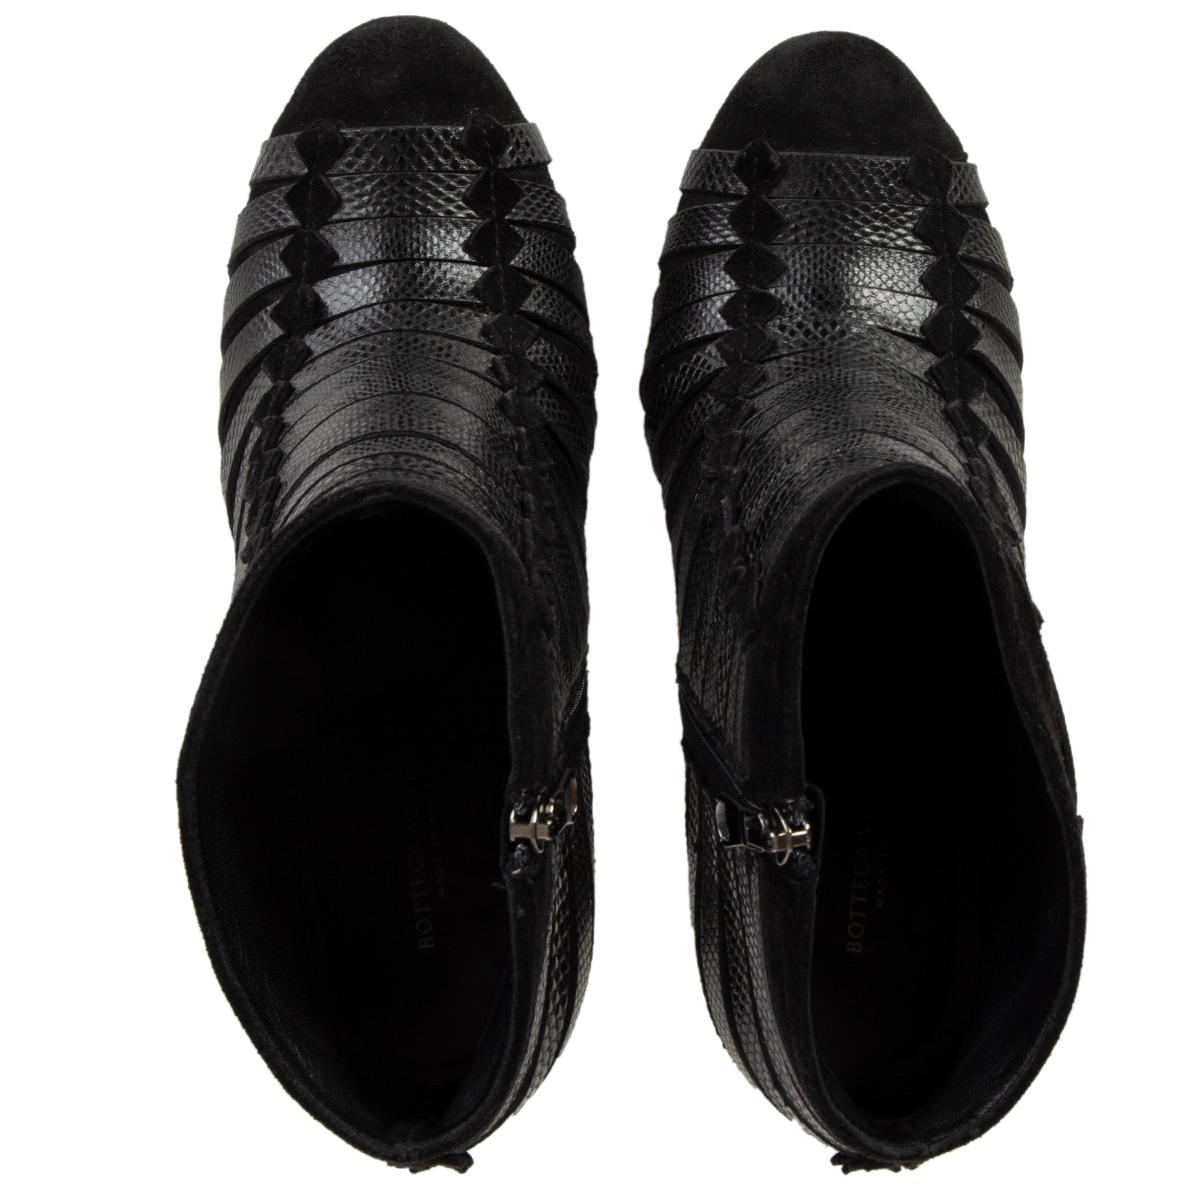 Black BOTTEGA VENETA black leather & suede FAUX LIZARD Ankle Boots Shoes 38.5